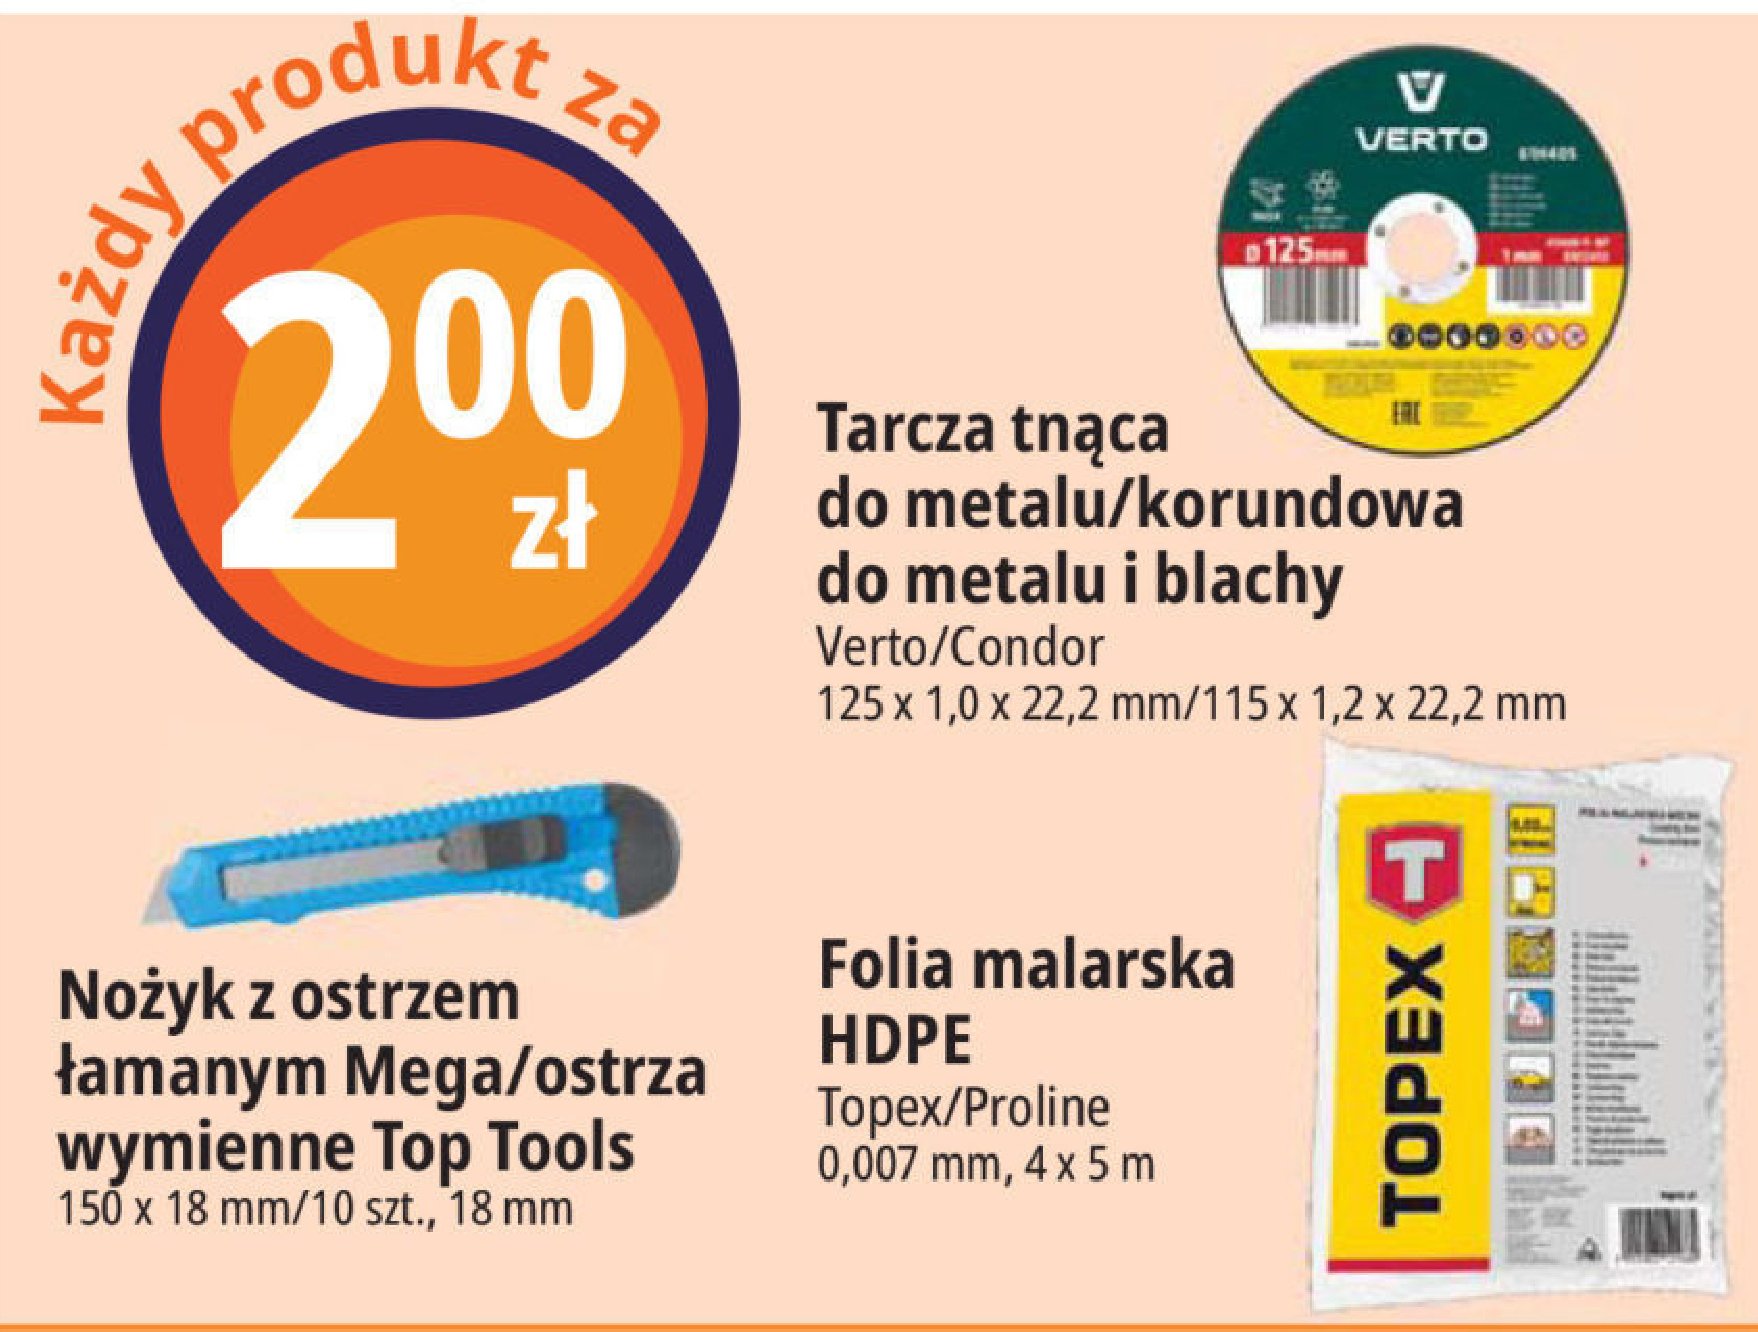 Folia malarska Topex promocja